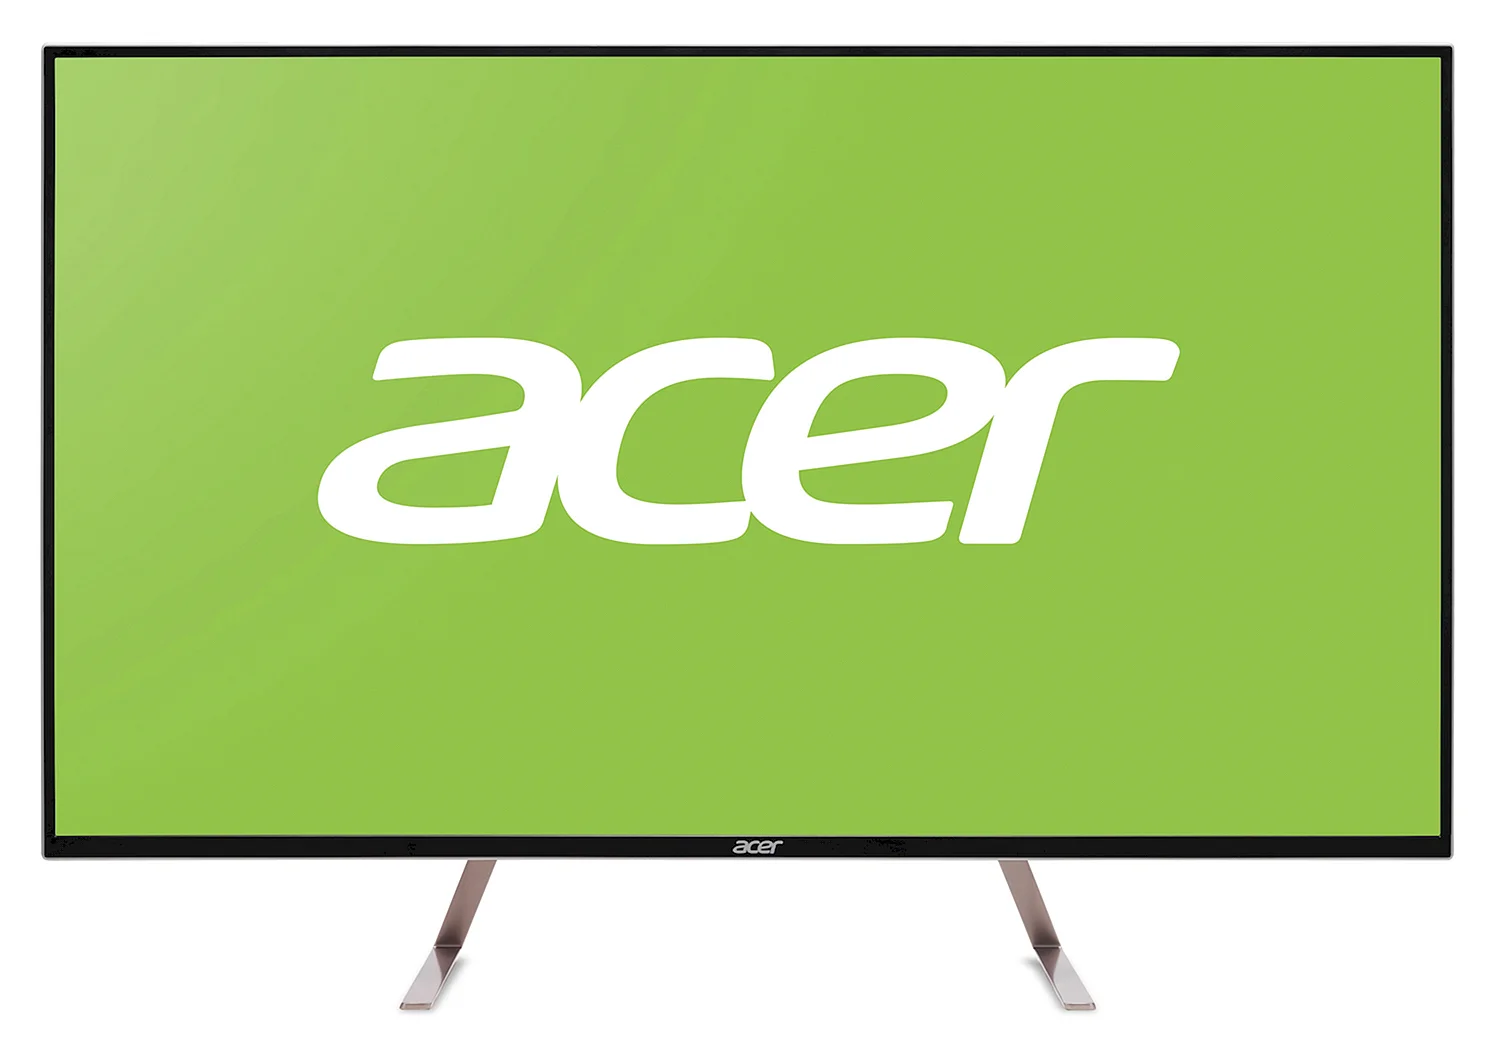 Acer et430k